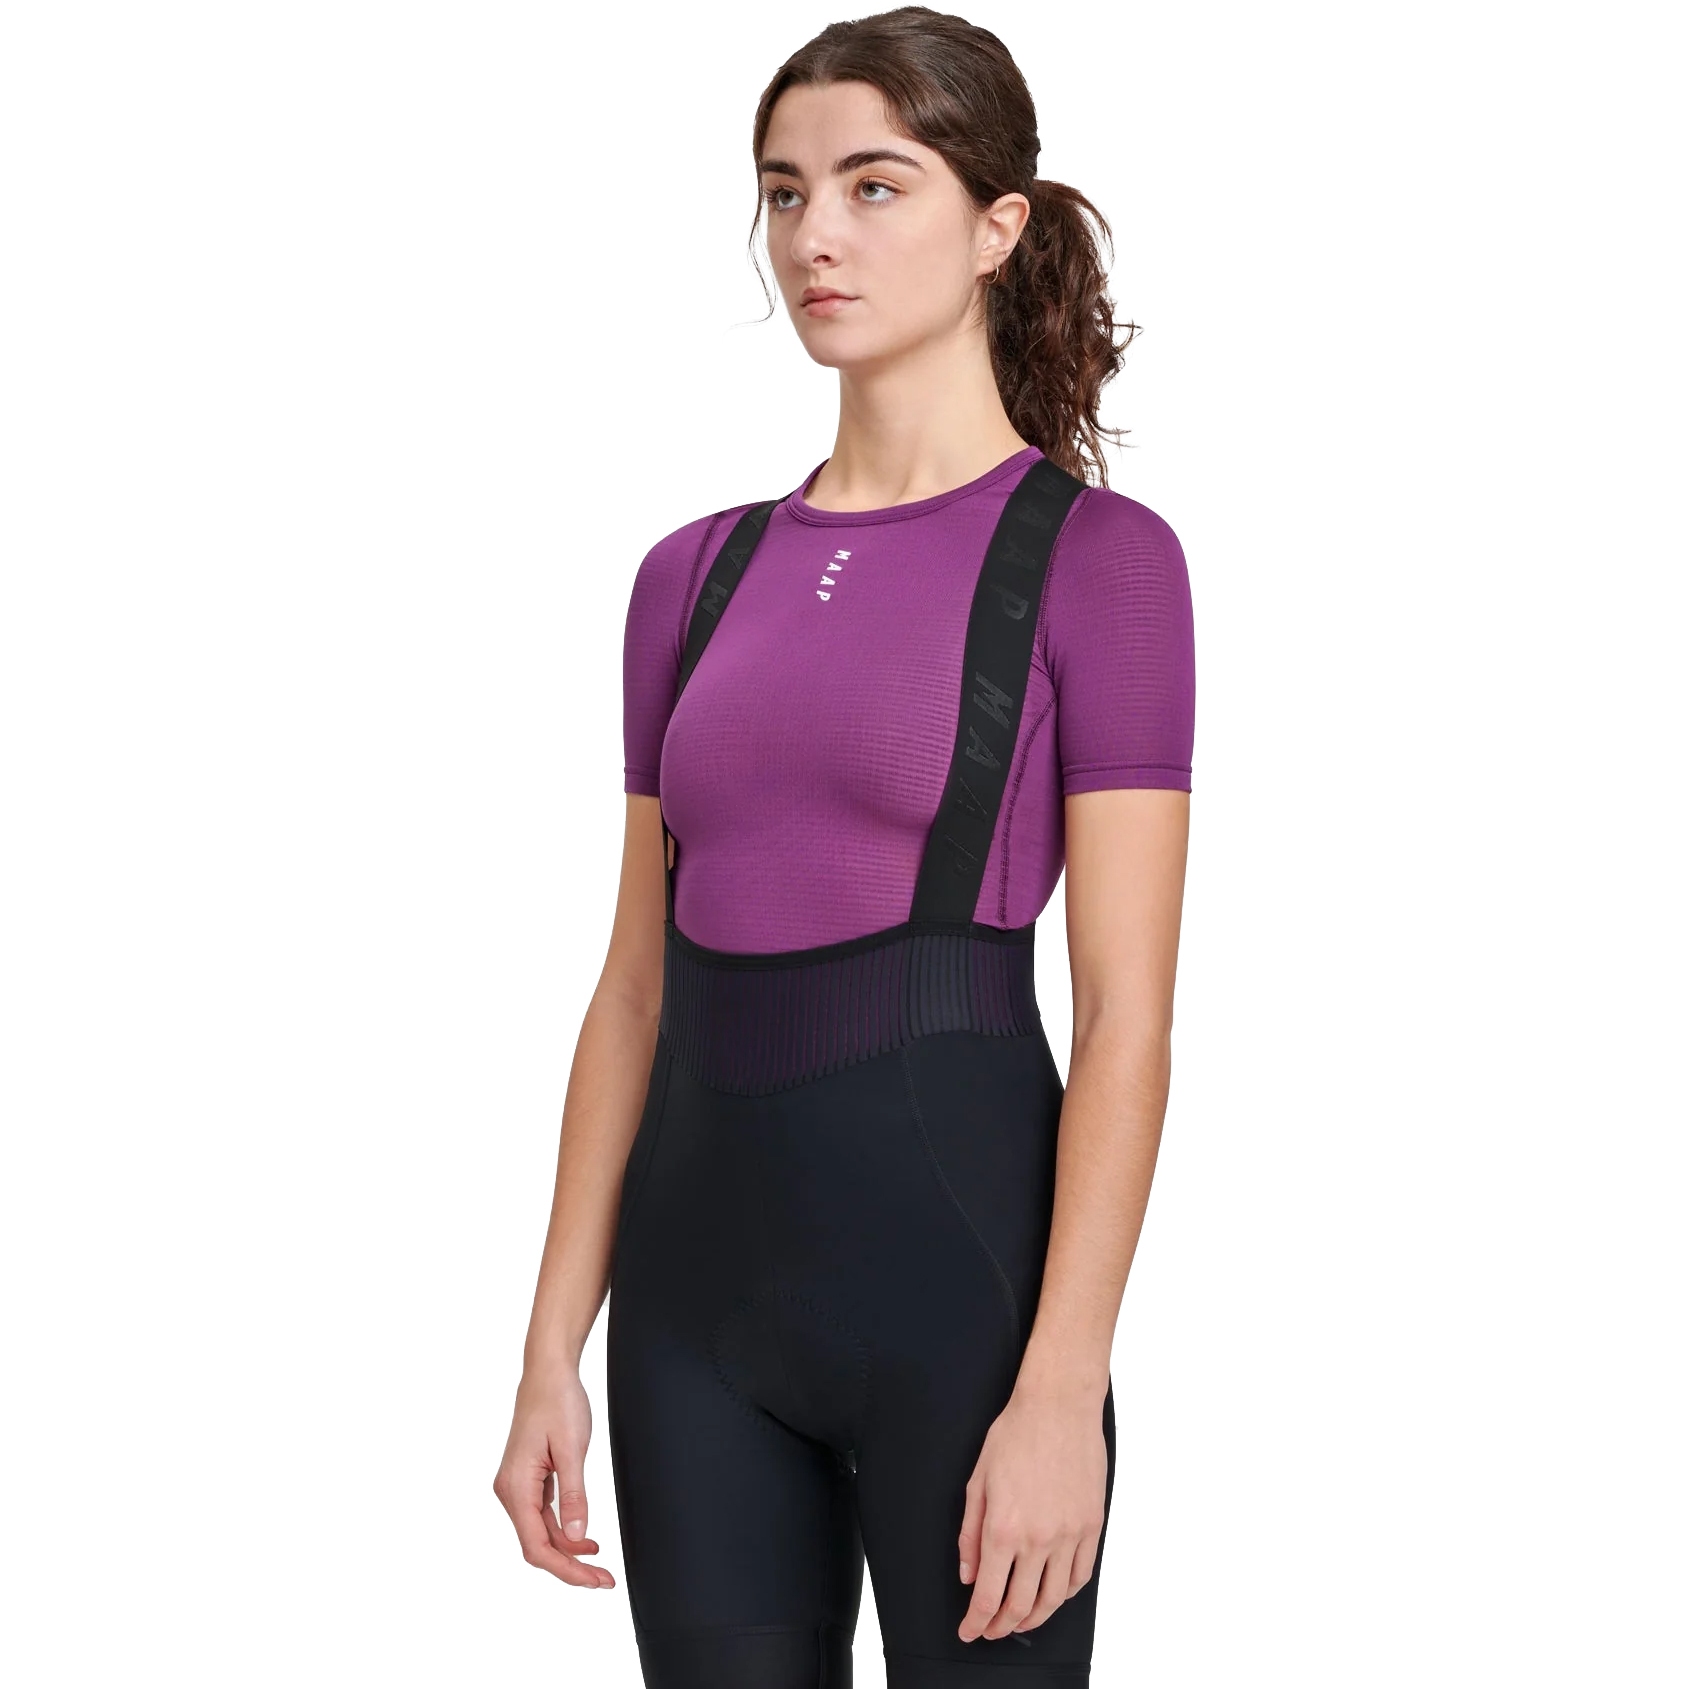 Immagine prodotto da MAAP Abbigliamento Intimo a Maniche Corte Donna - Termico - violet